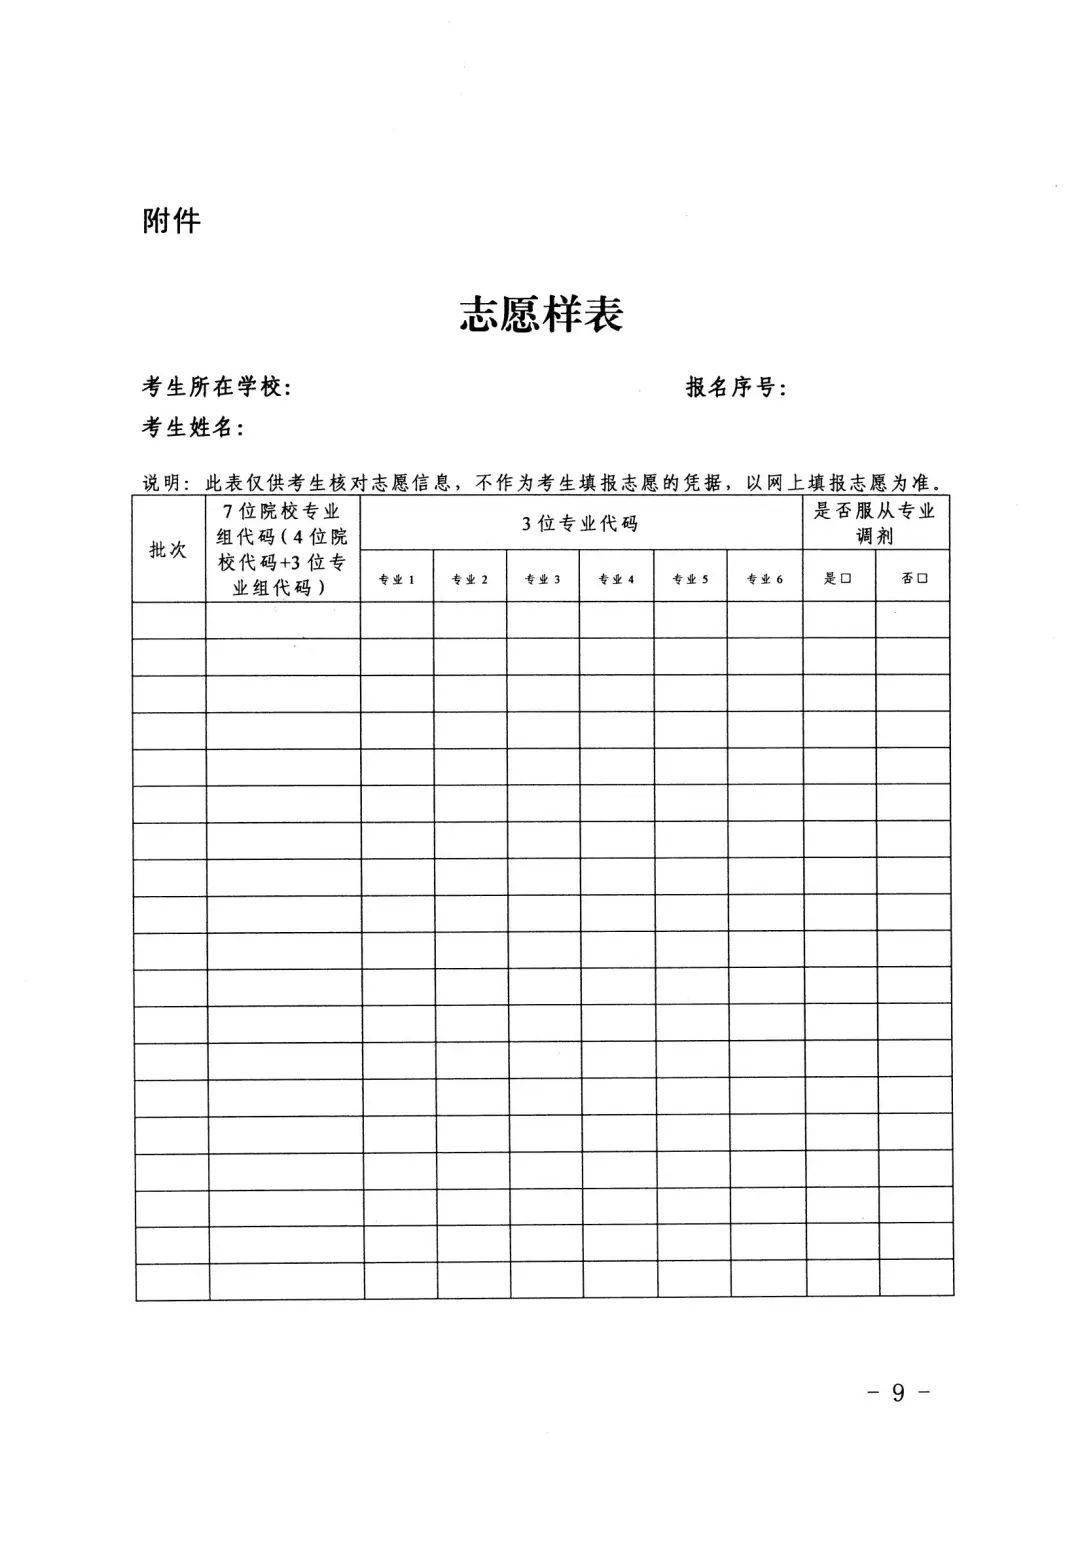 吉林省高考志愿填报表图片